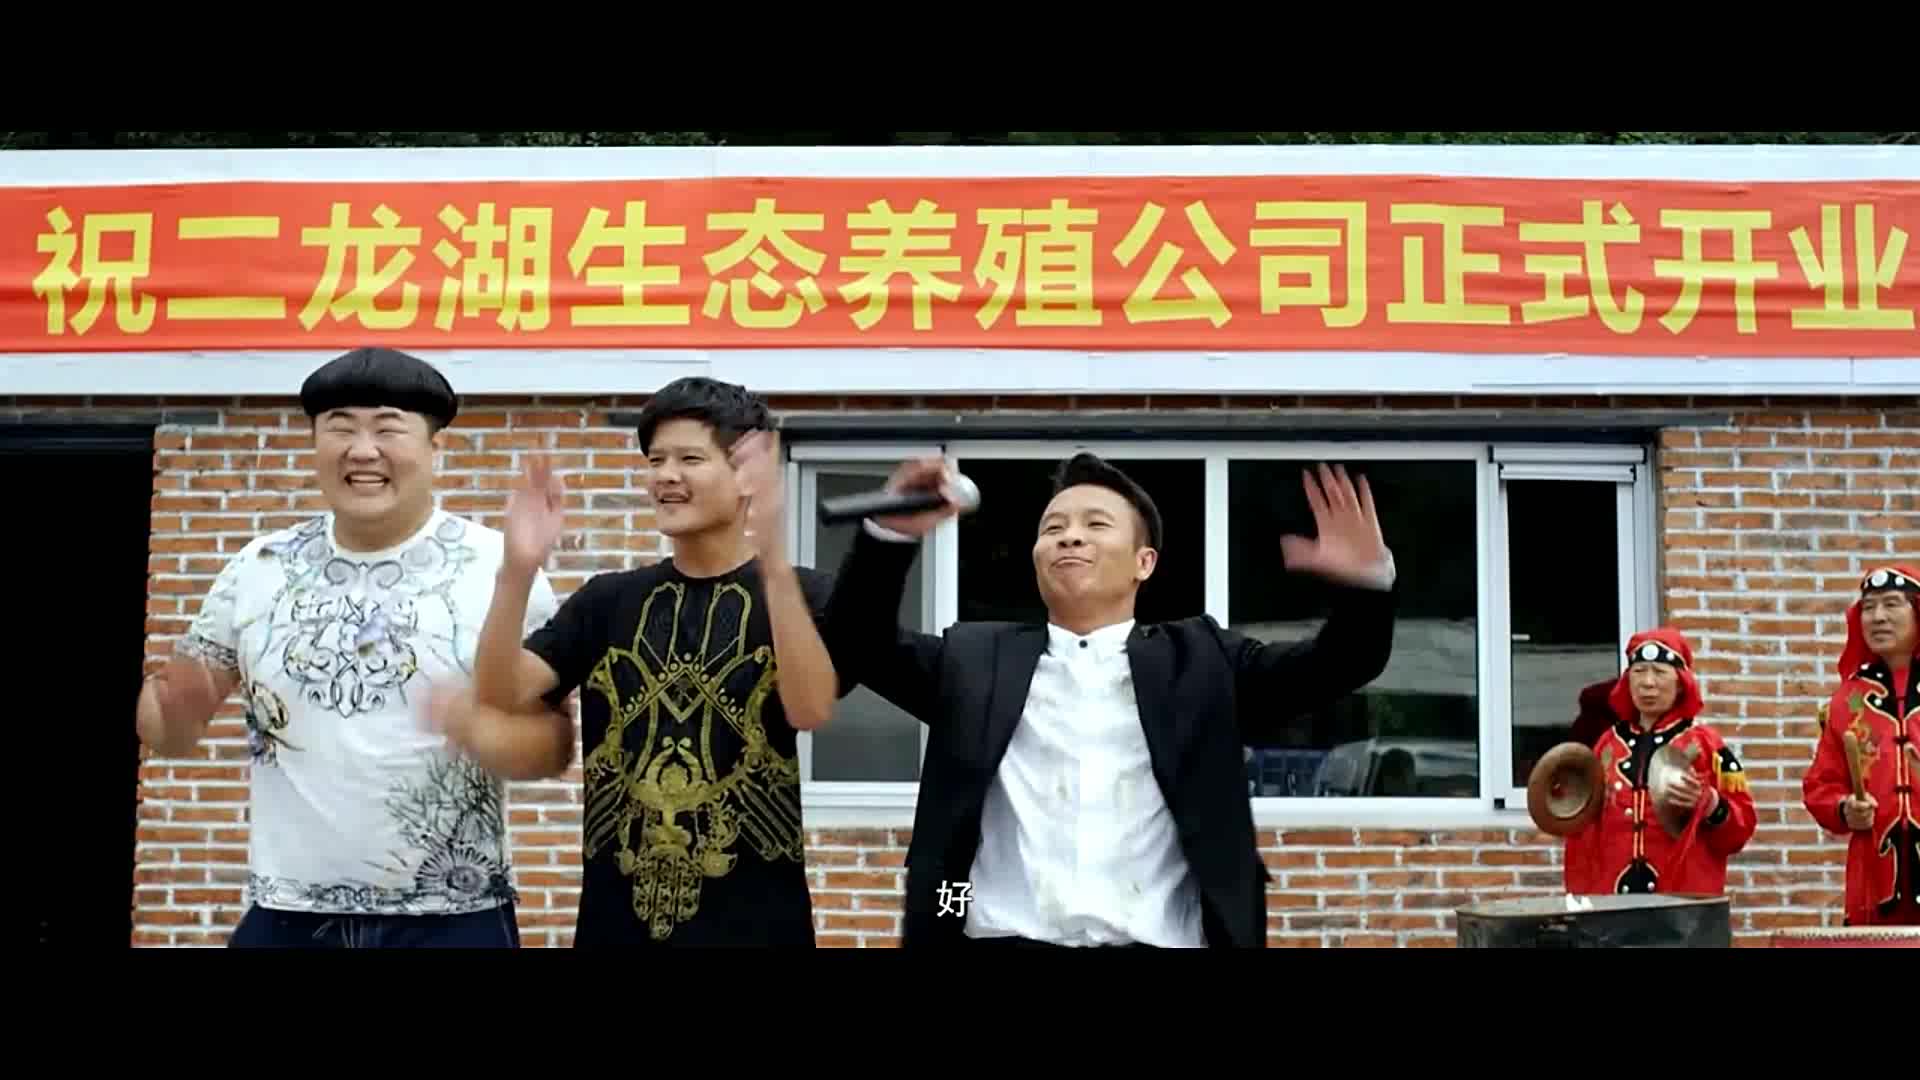 二龙湖浩哥(2012年张浩执导的电影)_搜狗百科